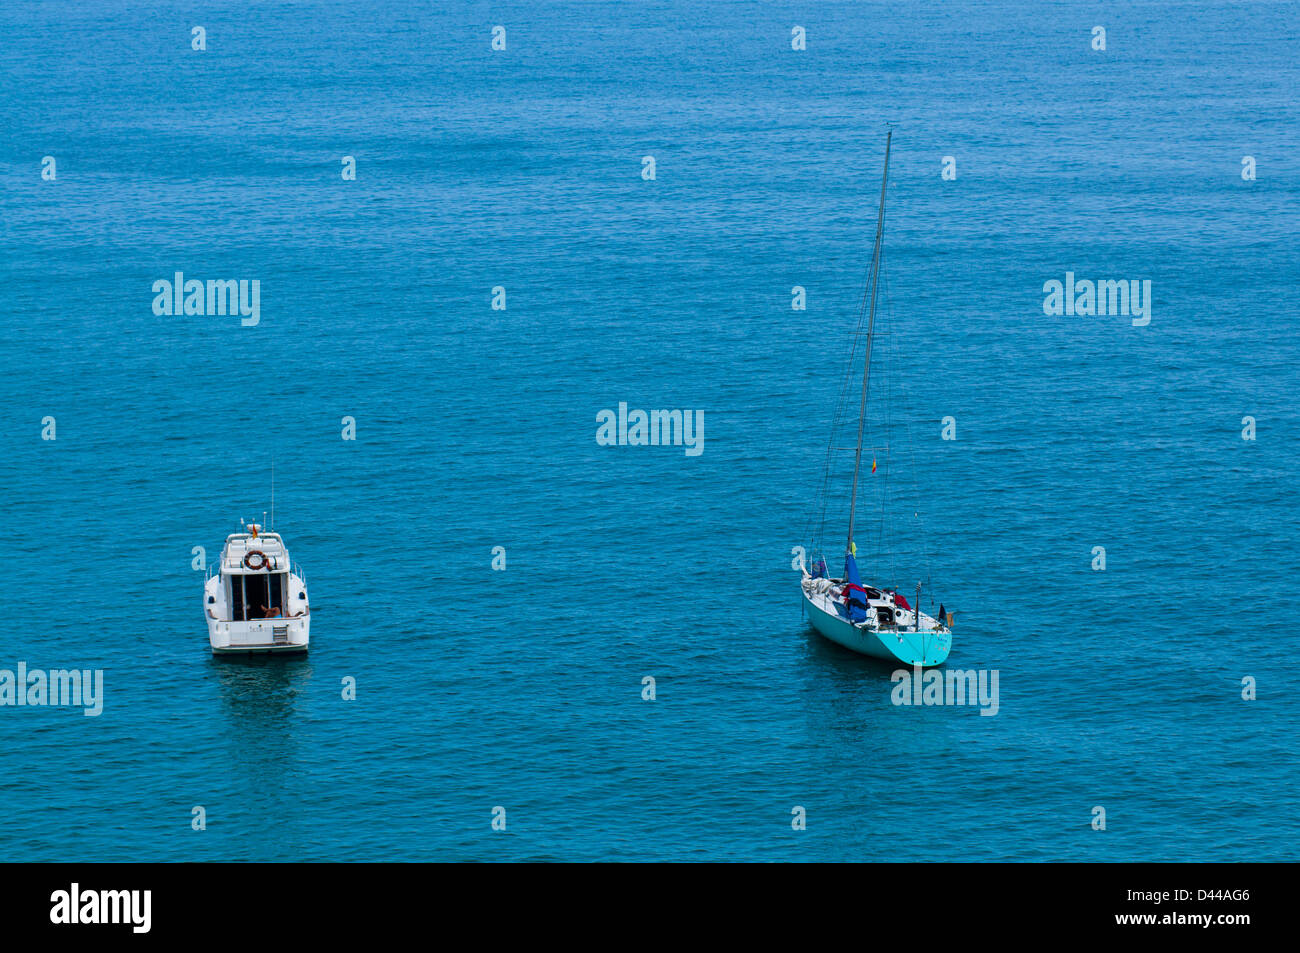 Boats on the Ensenada de Mataleñas, Santander, Cantabria, Spain Stock Photo